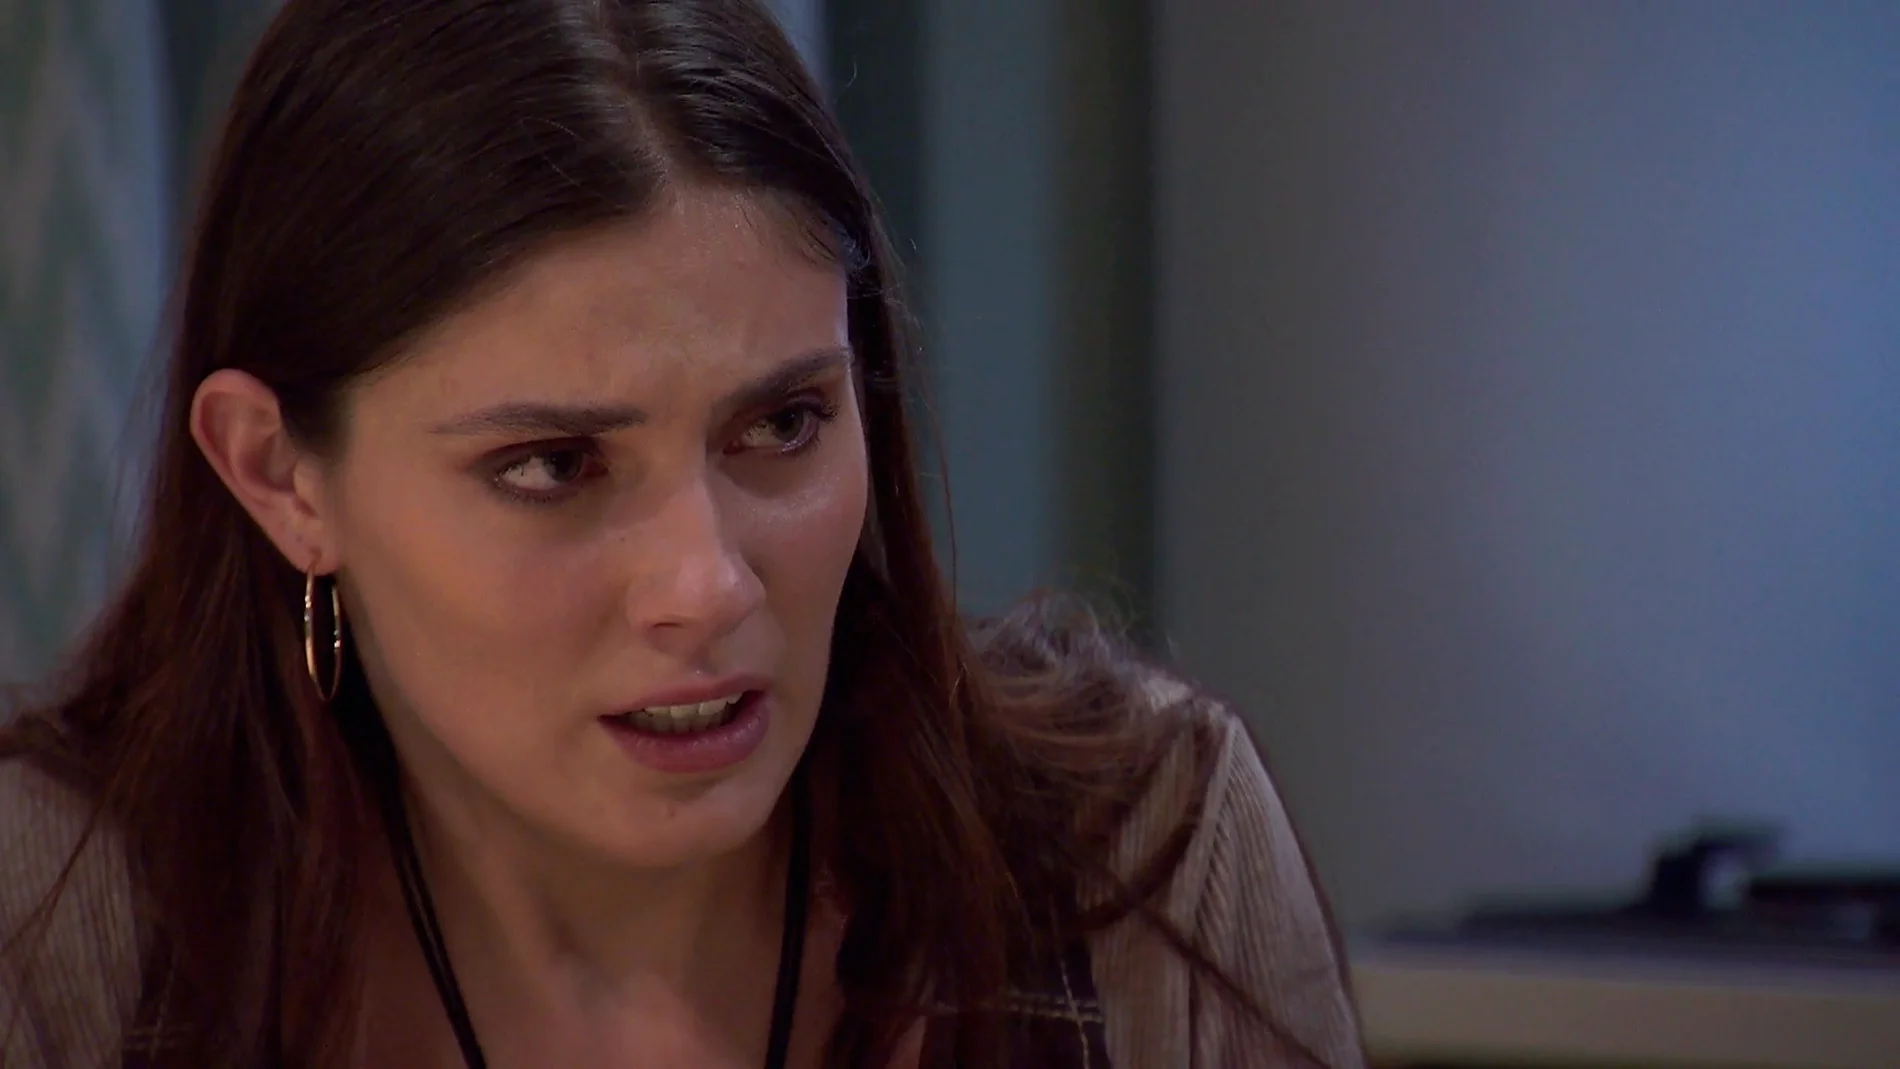 Andrea confiesa a Nieves que Ana Mari está muerta: “Ha sido todo culpa mía”